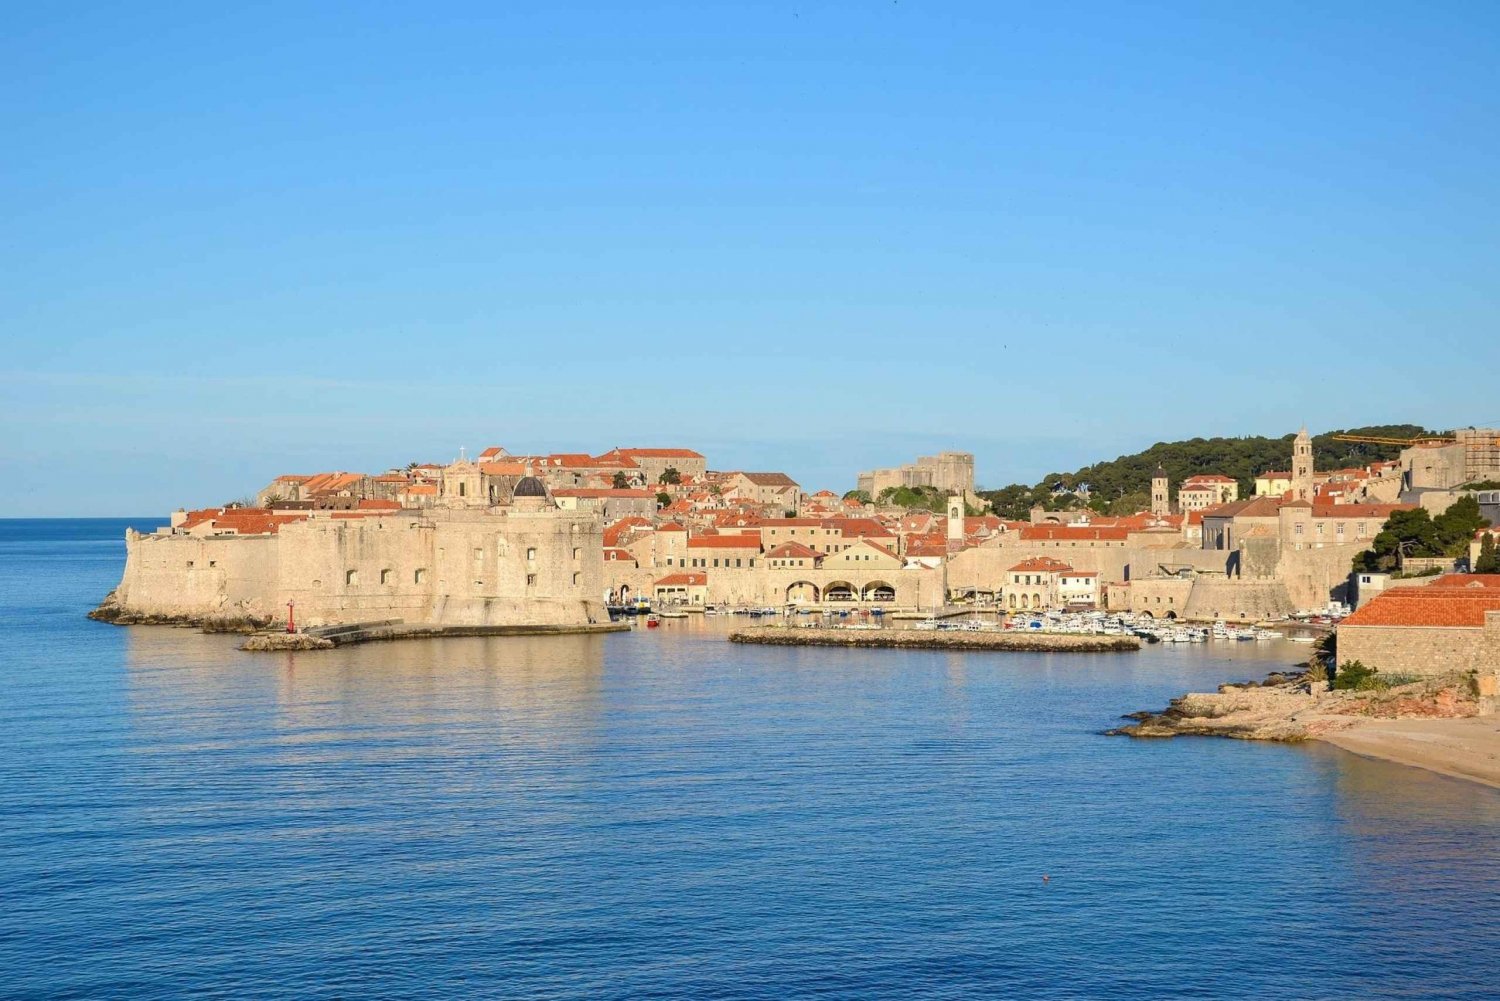 Rundtur i Dubrovniks judiska arv: Att avslöja det förflutna